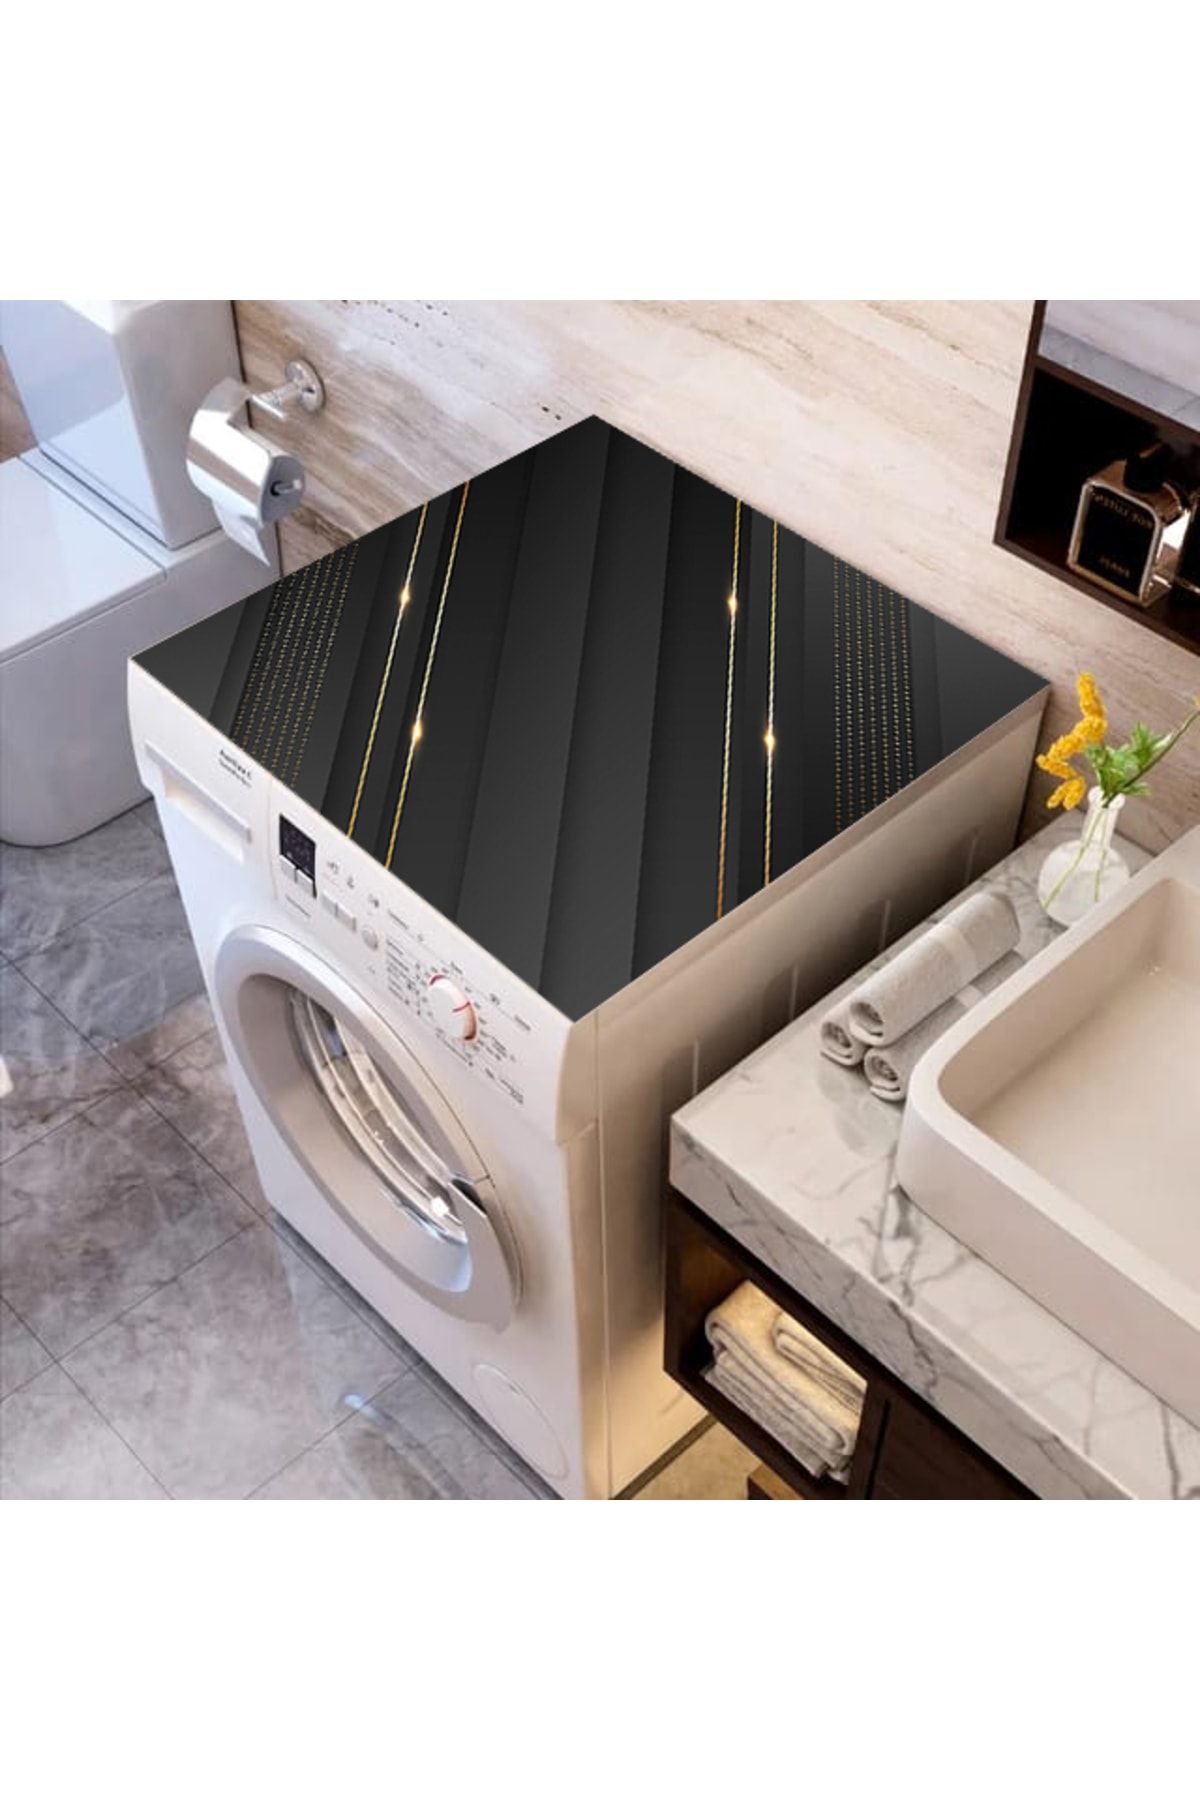 ALAMODECOR Siyah Gold Çizgili Elite Baskılı Çamaşır Makine Örtüsü Kumaş Örtü 62 Cm X 62 Cm | Banyo Düzenleyici